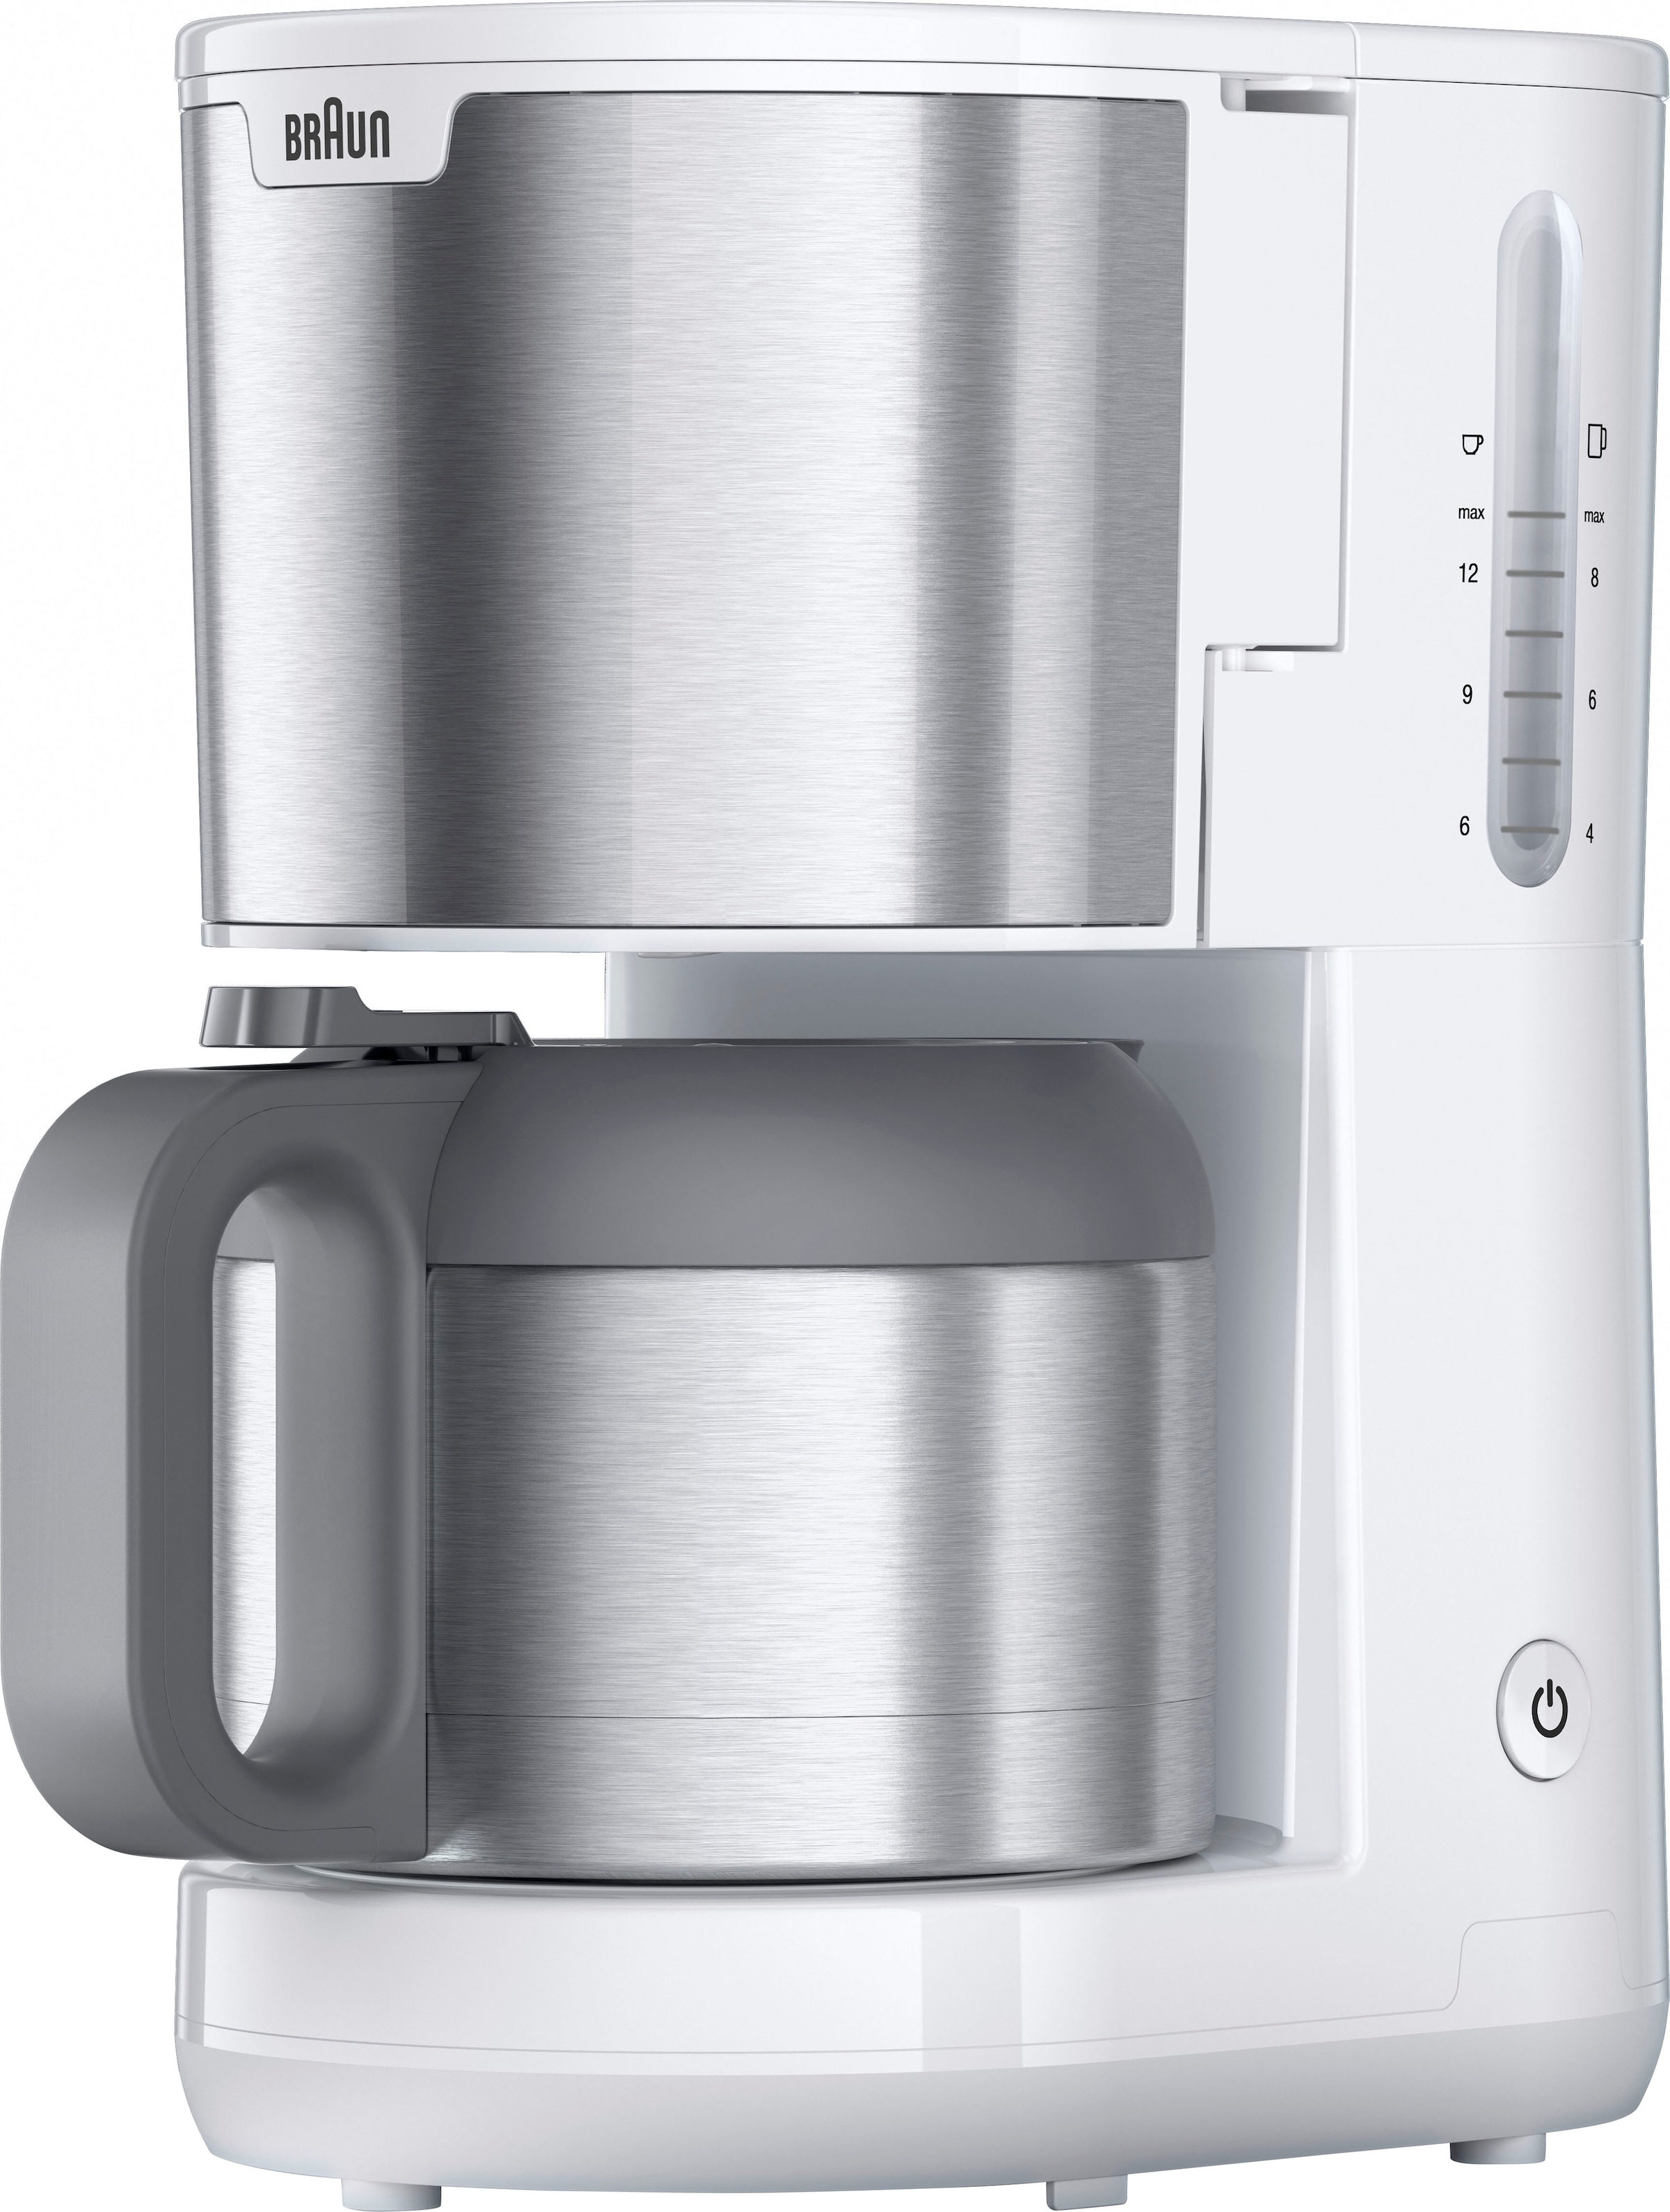 Braun Filterkaffeemaschine »PurShine KF1505 WH l XXL Jahren Kaffeekanne, Garantie mit Thermokanne«, mit 1,2 Papierfilter 3